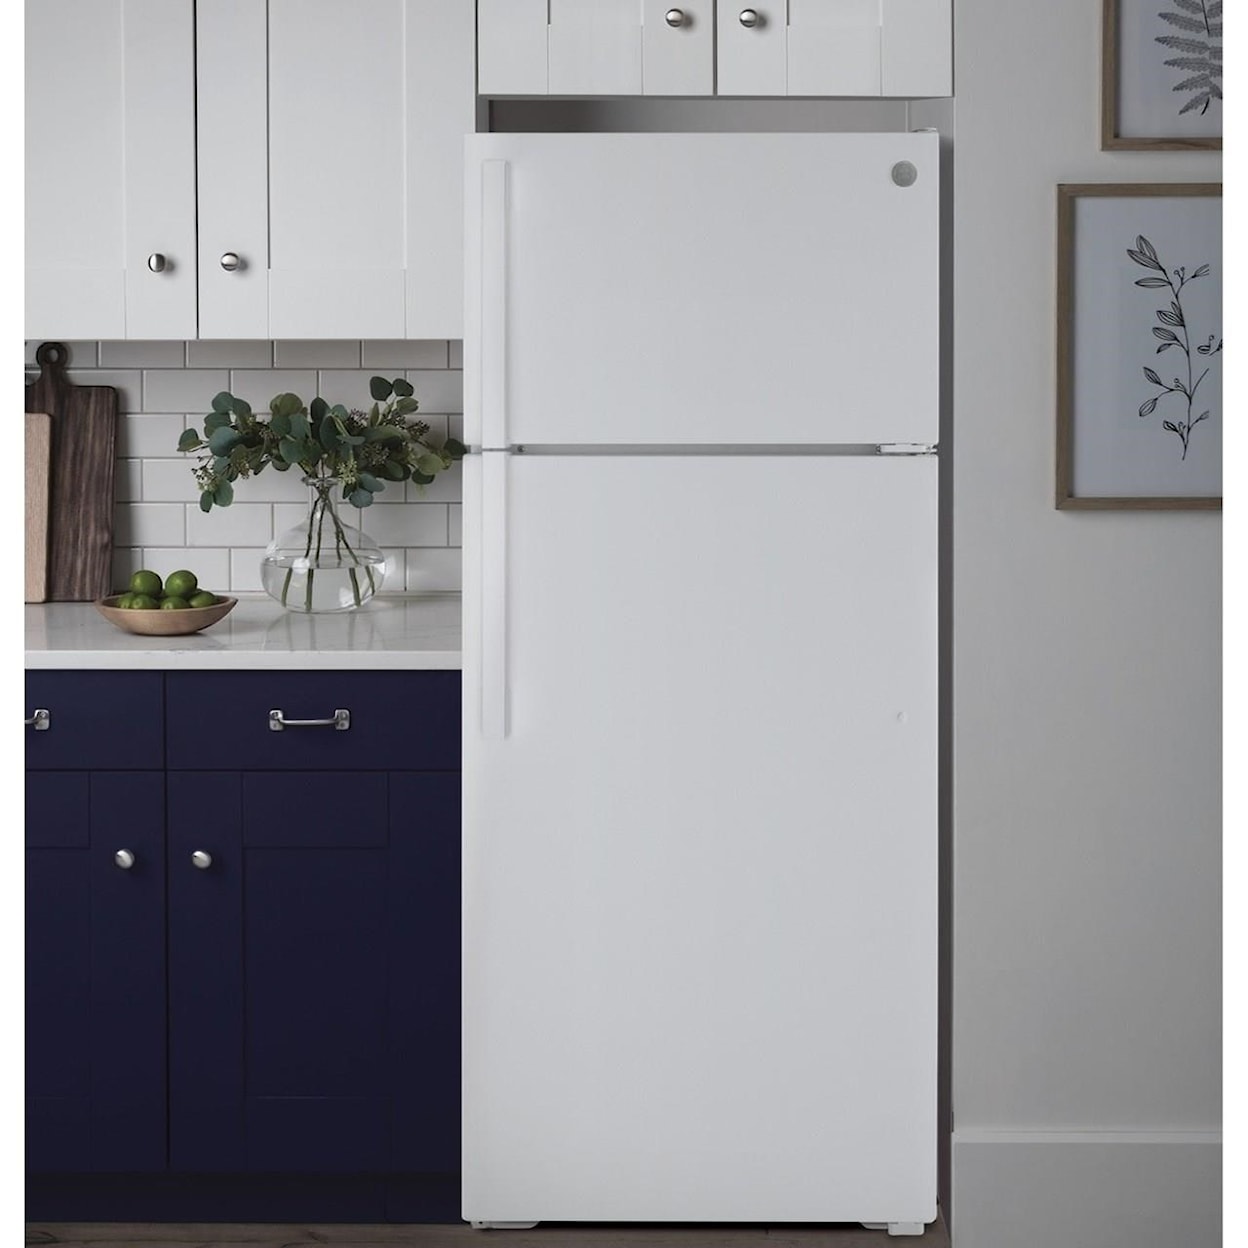 GE Appliances GE Top-Freezer Refrigerators GE® ENERGY STAR® 15.6 Cu. Ft. Top-Freezer Re